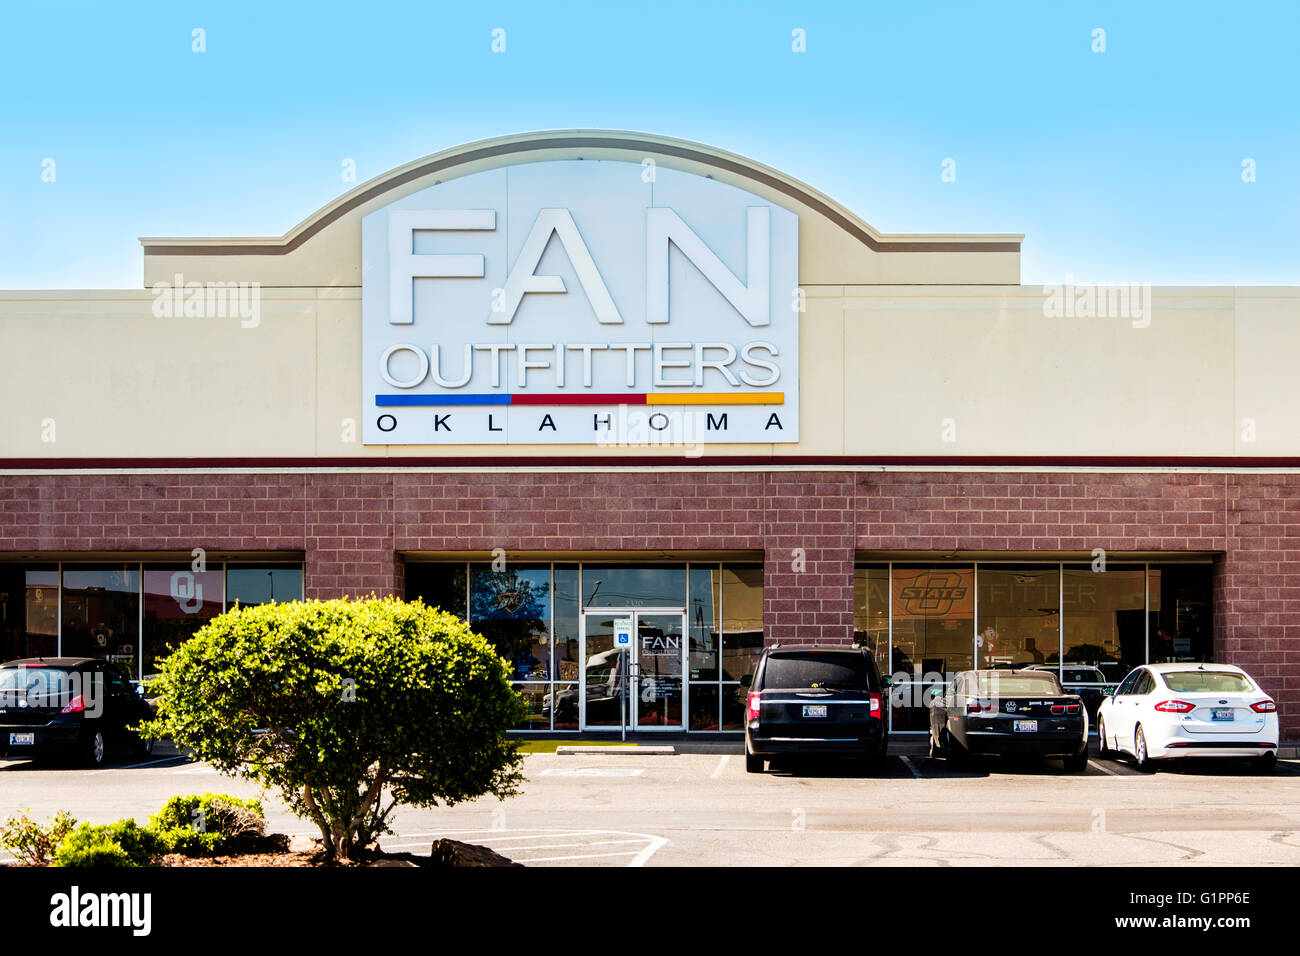 La parte esterna della ventola Outfitters, un negozio di maglie e abbigliamento sportivo per la ventola. Oklahoma City, Oklahoma, Stati Uniti d'America. Foto Stock